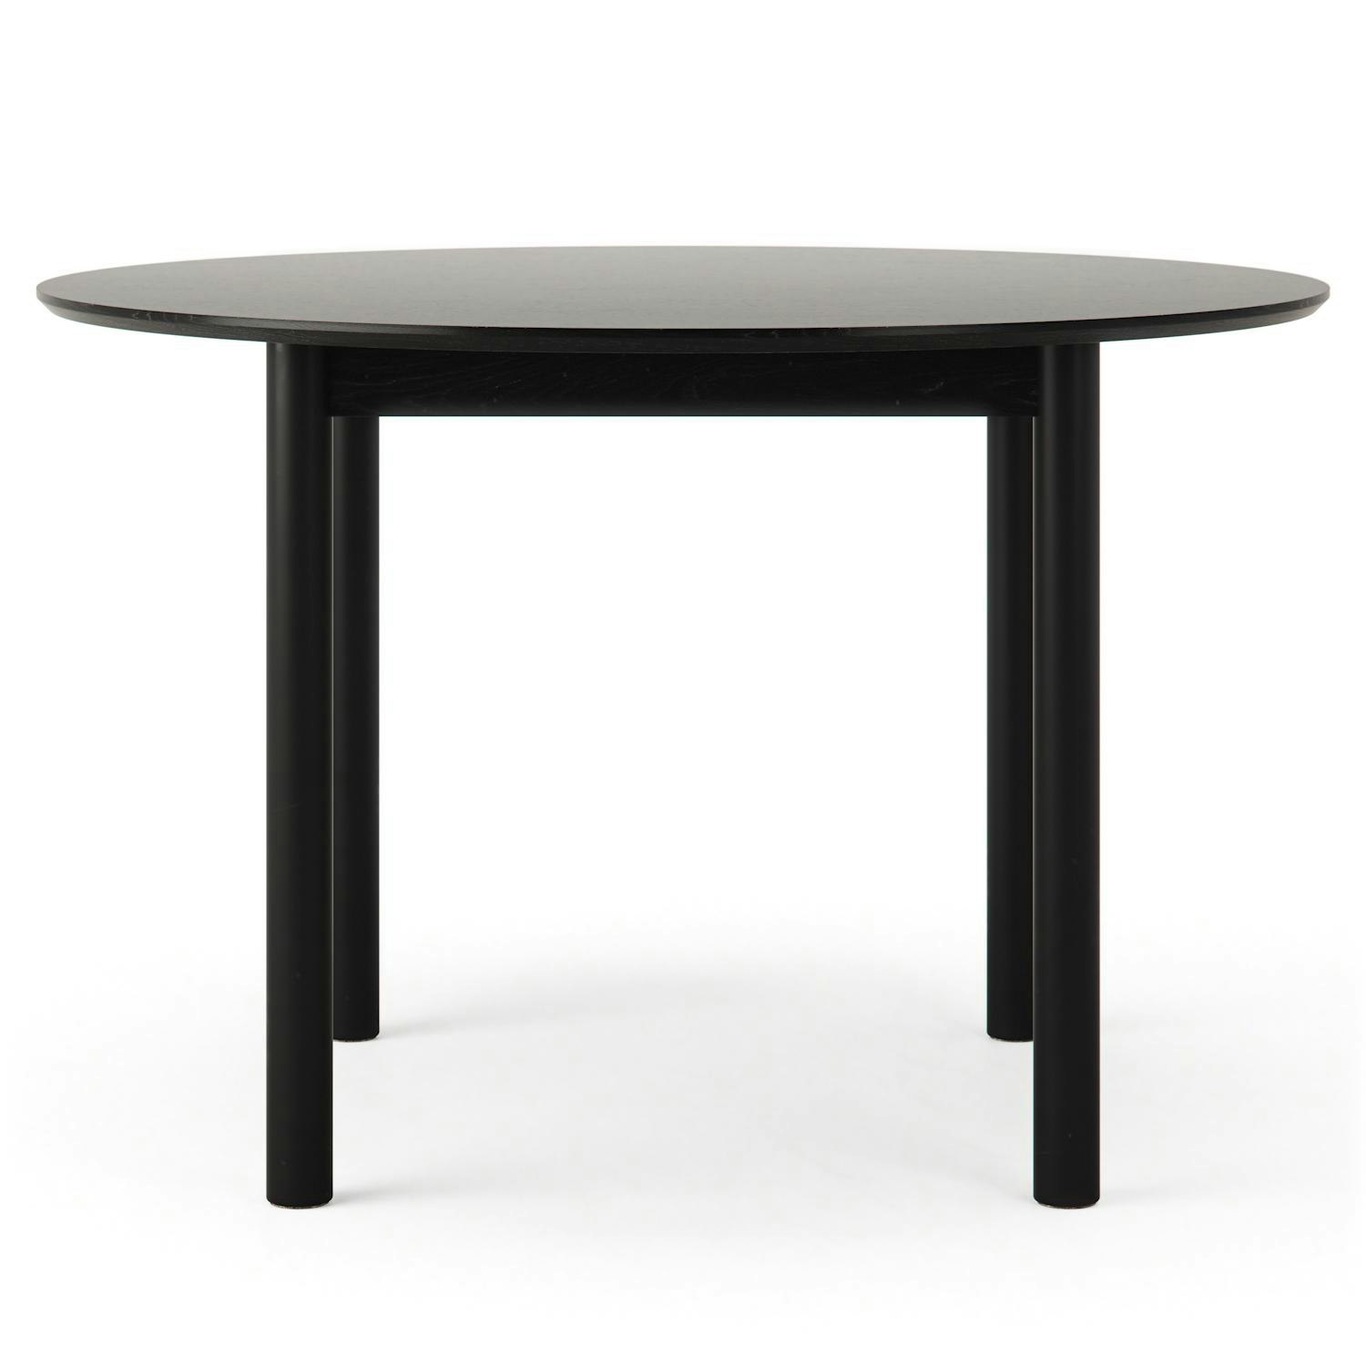 Wood Pöytä 110 cm, Musta